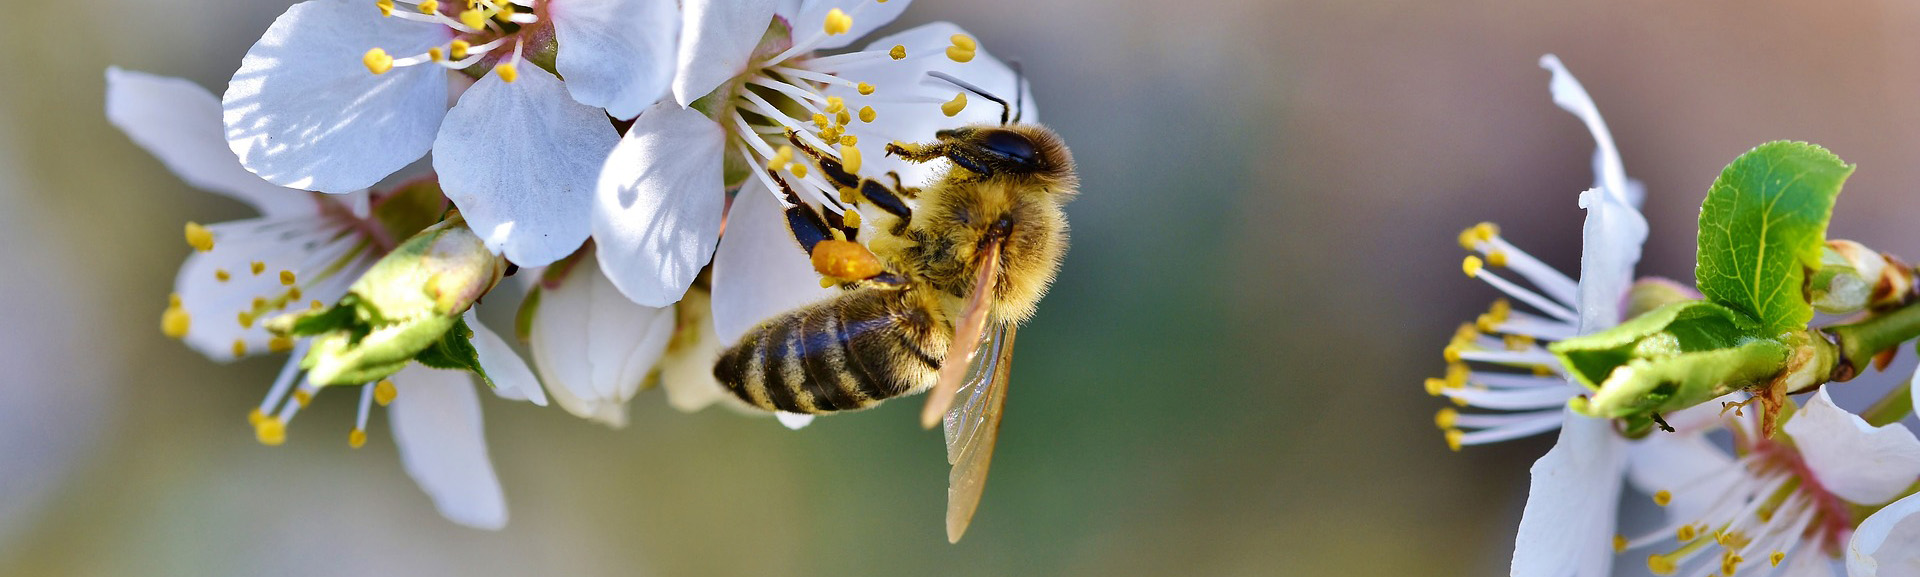 Bio Imkerei Bramreither aus dem Mühlviertel in Österreich, Bienenpatenschaft, Bio Honig und weitere Bienenprodukte regional kaufen, Helfenberg, Penning